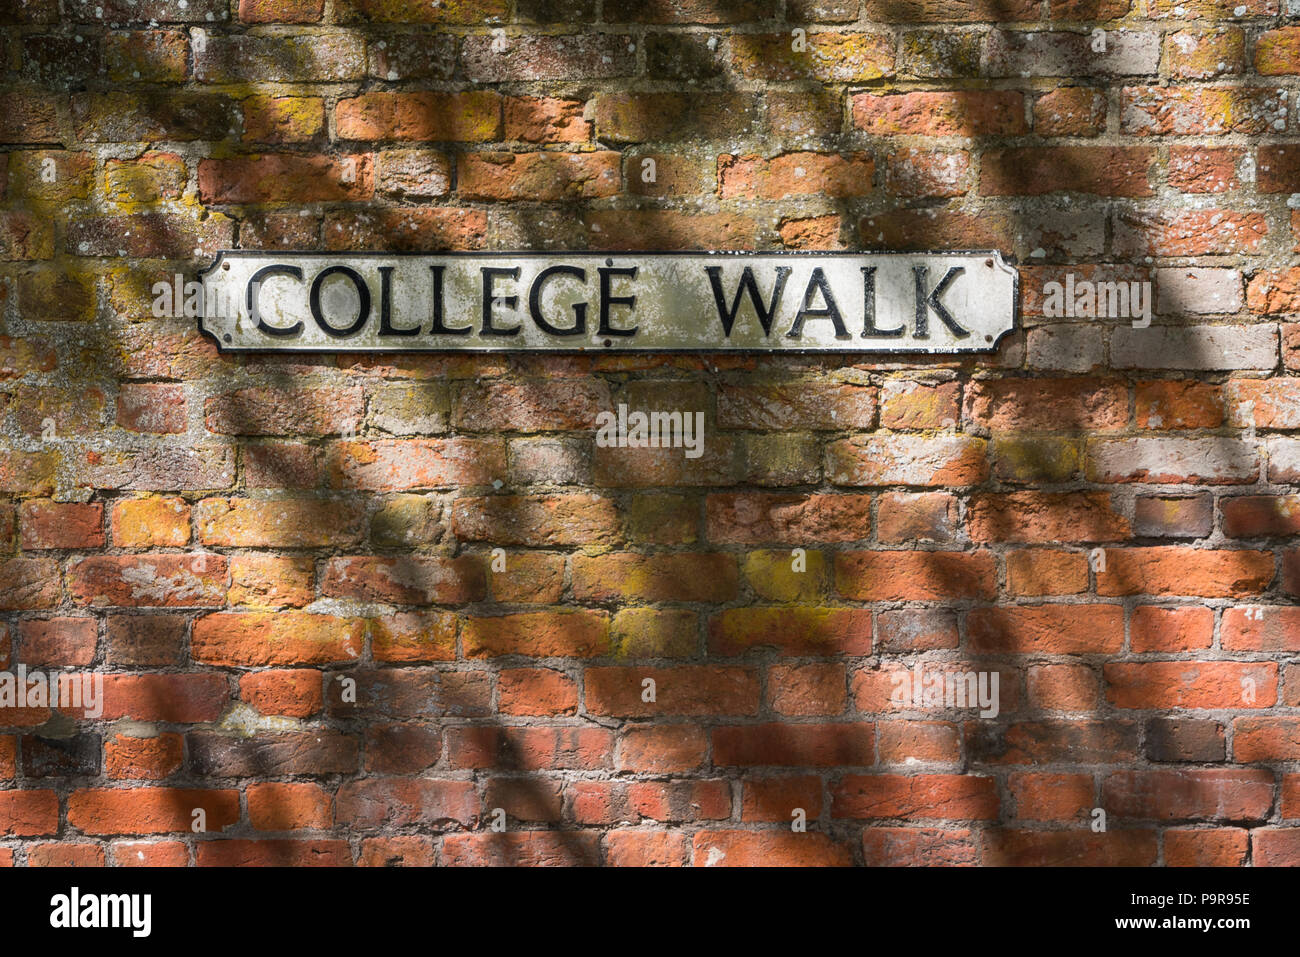 College andando en un cartel con el nombre de la calle blanco en una pared de ladrillo rojo Foto de stock